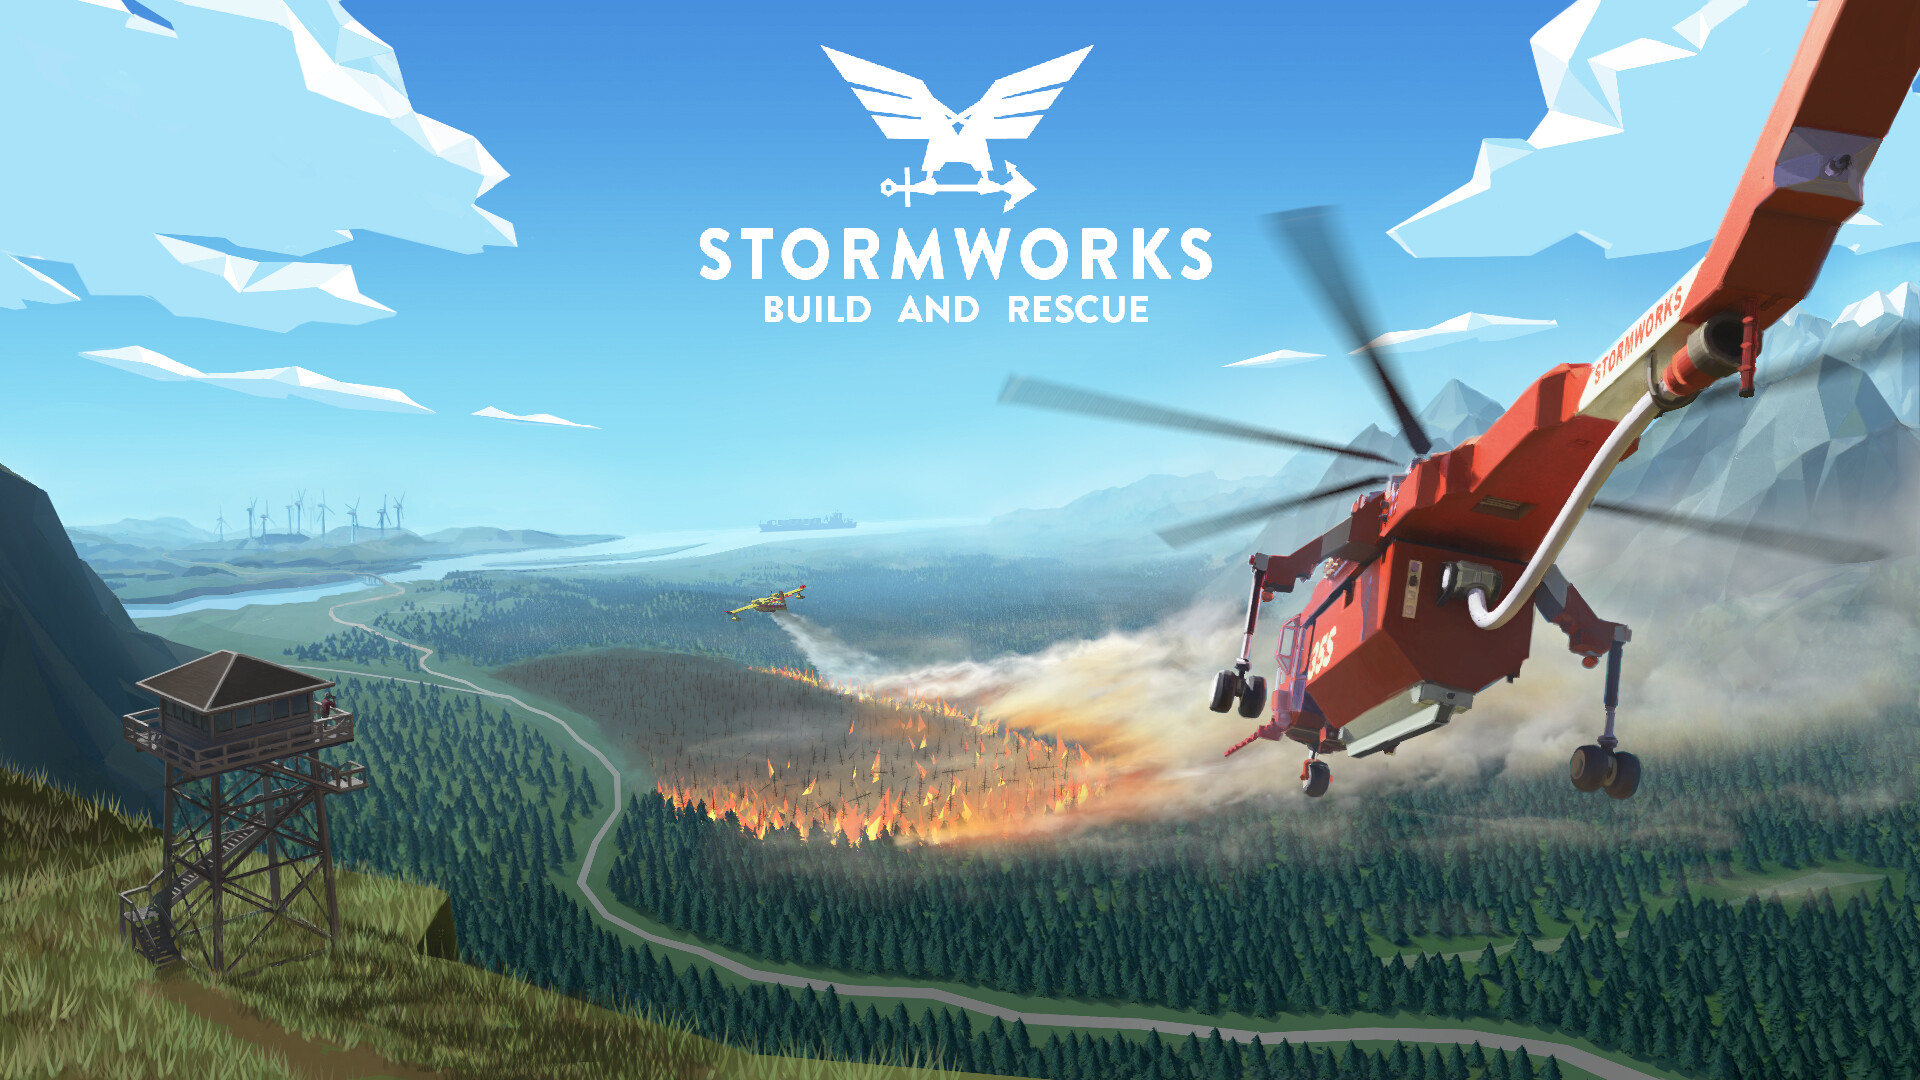 Устанавливаем пожарный гидрант и спасаем / Карьера №19 / Stormworks: Build and Rescue в 2022 году